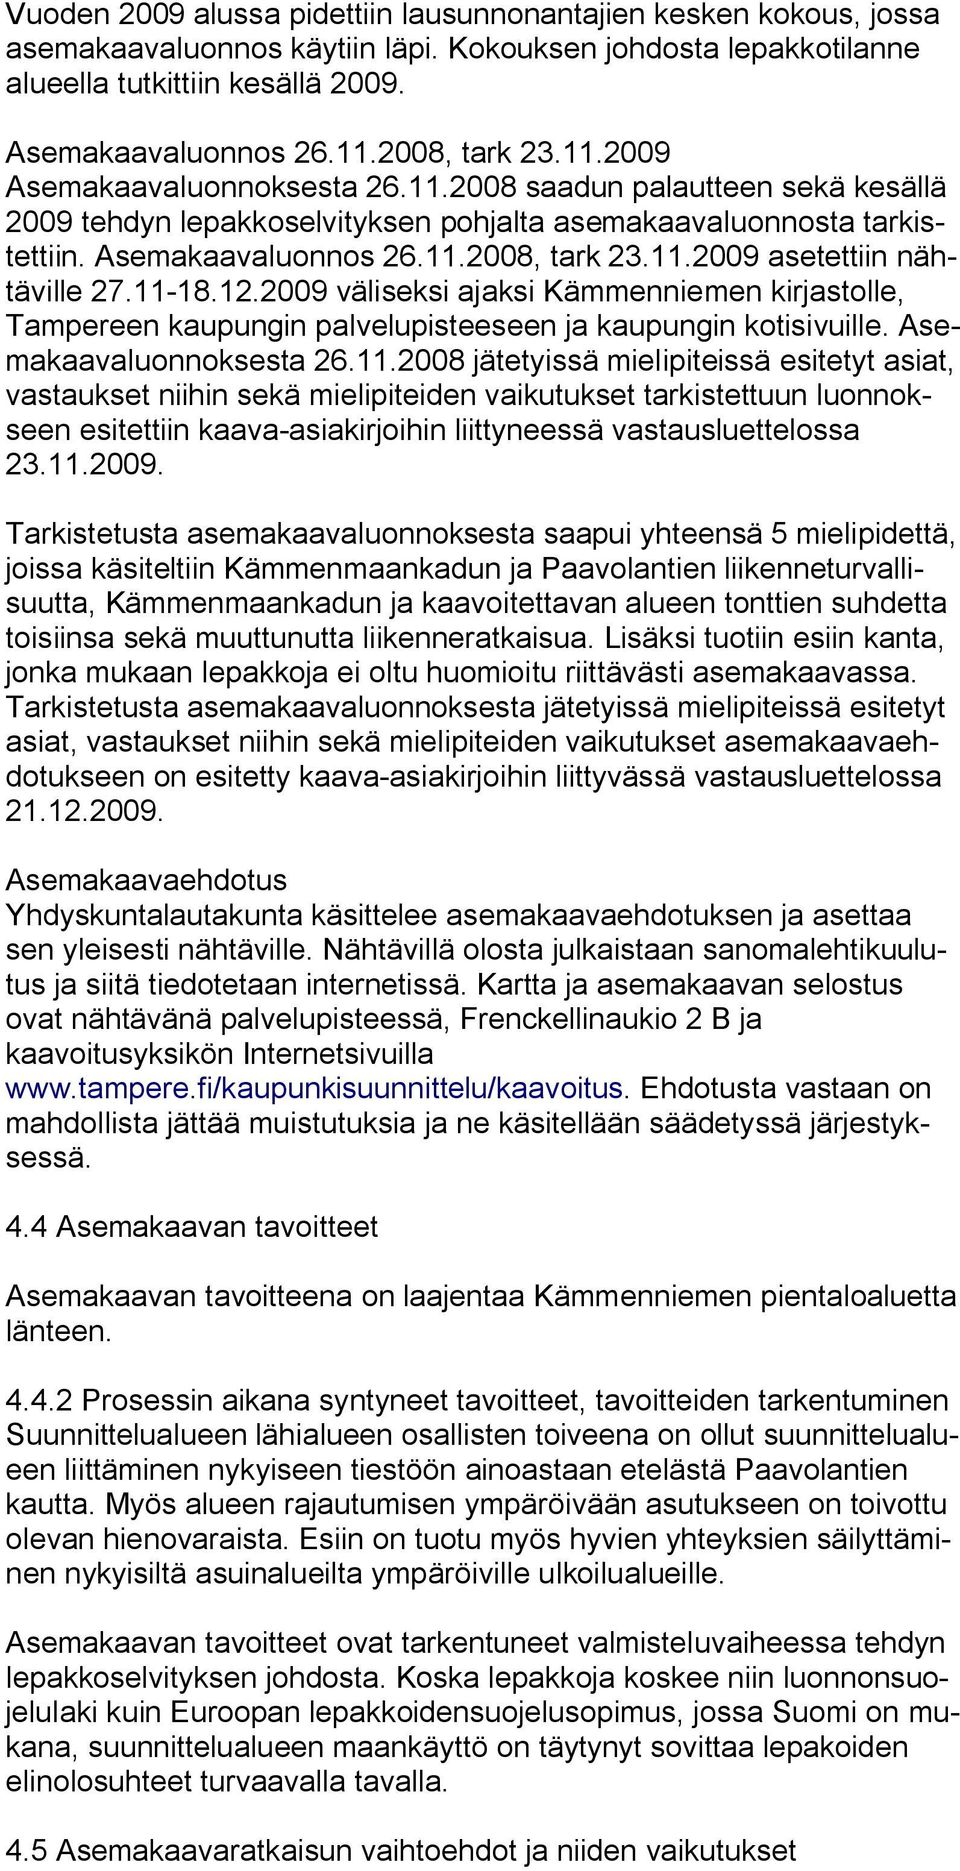 11 18.12.2009 väliseksi ajaksi Kämmenniemen kirjastolle, Tampereen kaupungin palvelupisteeseen ja kaupungin kotisivuille. Asemakaavaluonnoksesta 26.11.2008 jätetyissä mielipiteissä esitetyt asiat, vastaukset niihin sekä mielipiteiden vaikutukset tarkistettuun luonnokseen esitettiin kaava asiakirjoihin liittyneessä vastausluettelossa 23.